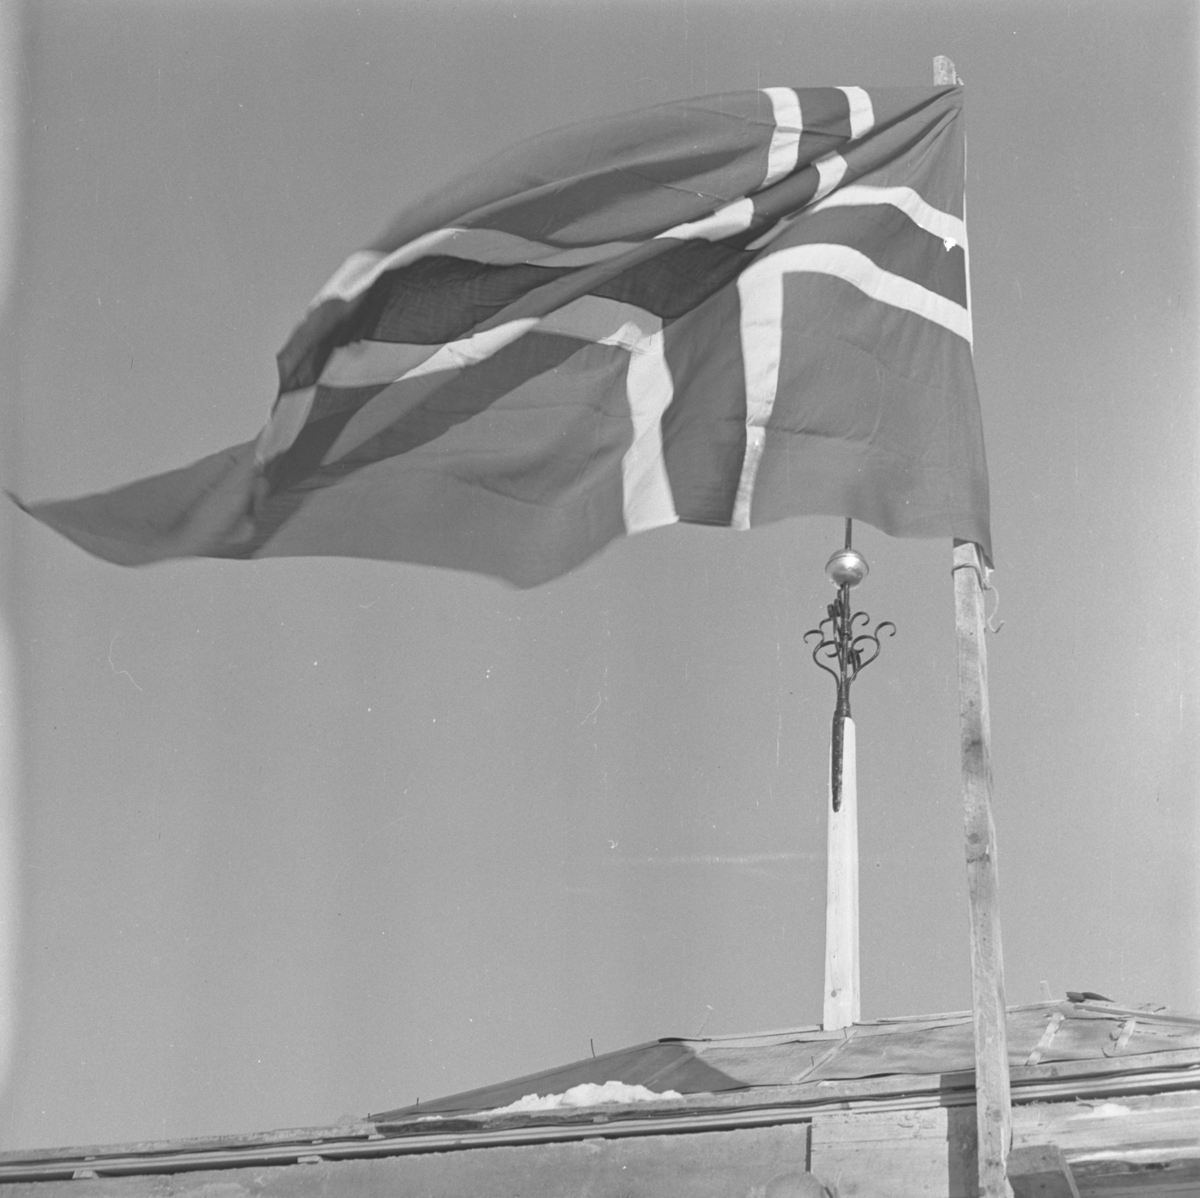 Aust-Agder-Museets første byggetrinn  på Langsæ.  Kranselag. Flagget vaiet og i bakgrunnen sees et spir med beslag av smijern.